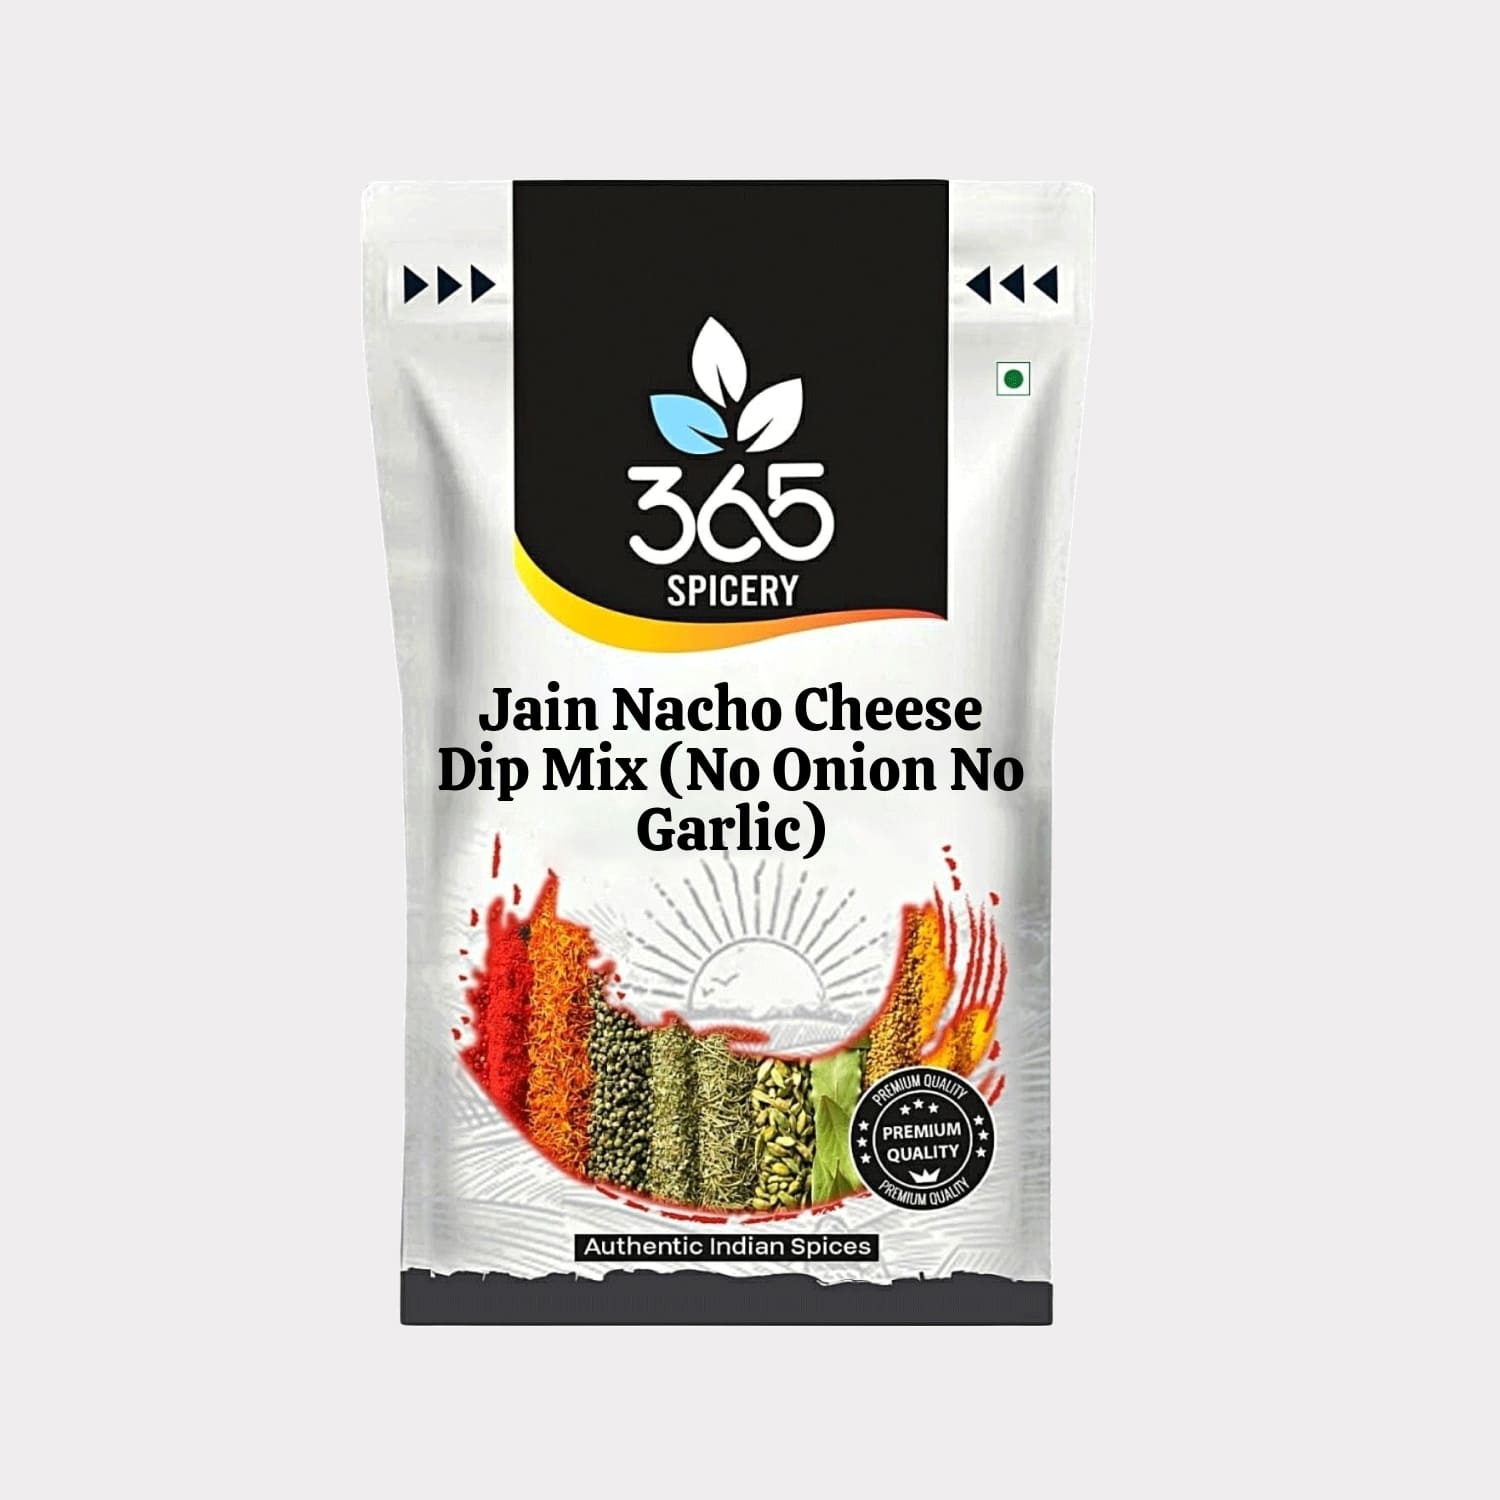 Jain Nacho Cheese Dip Mix (No Onion No Garlic)